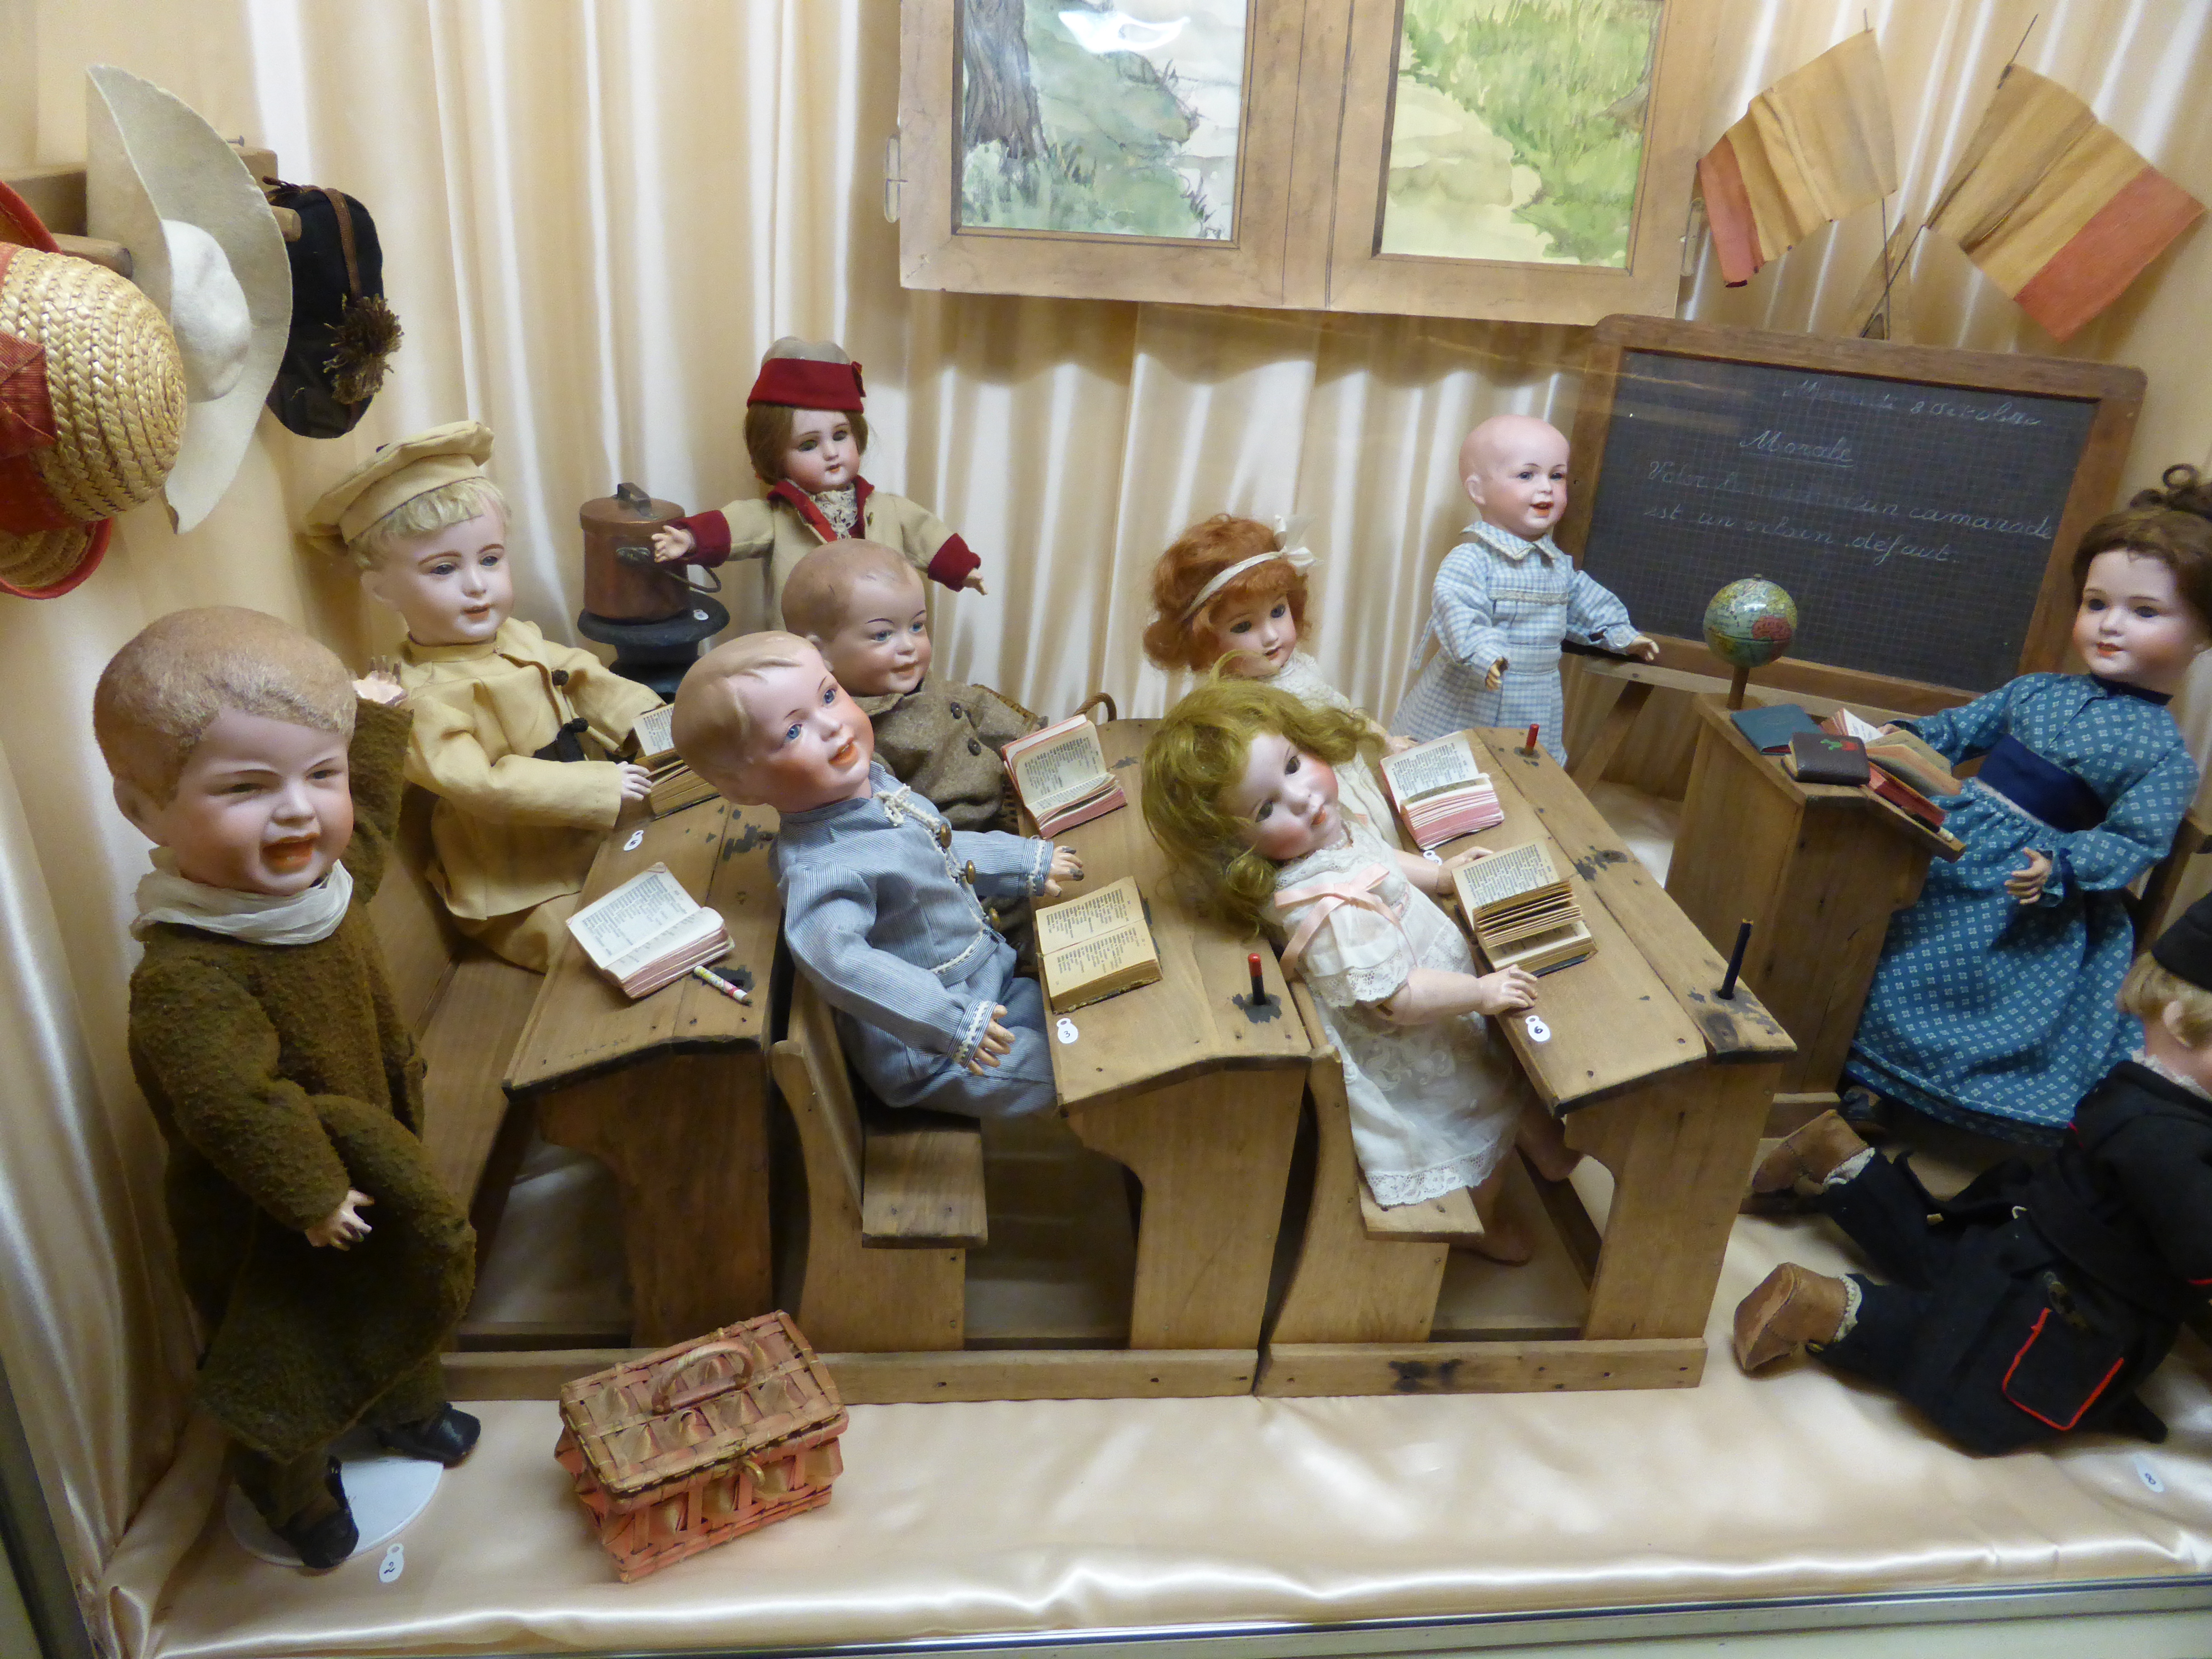 Etats-Unis : un musée organise le concours de la poupée la plus effrayante